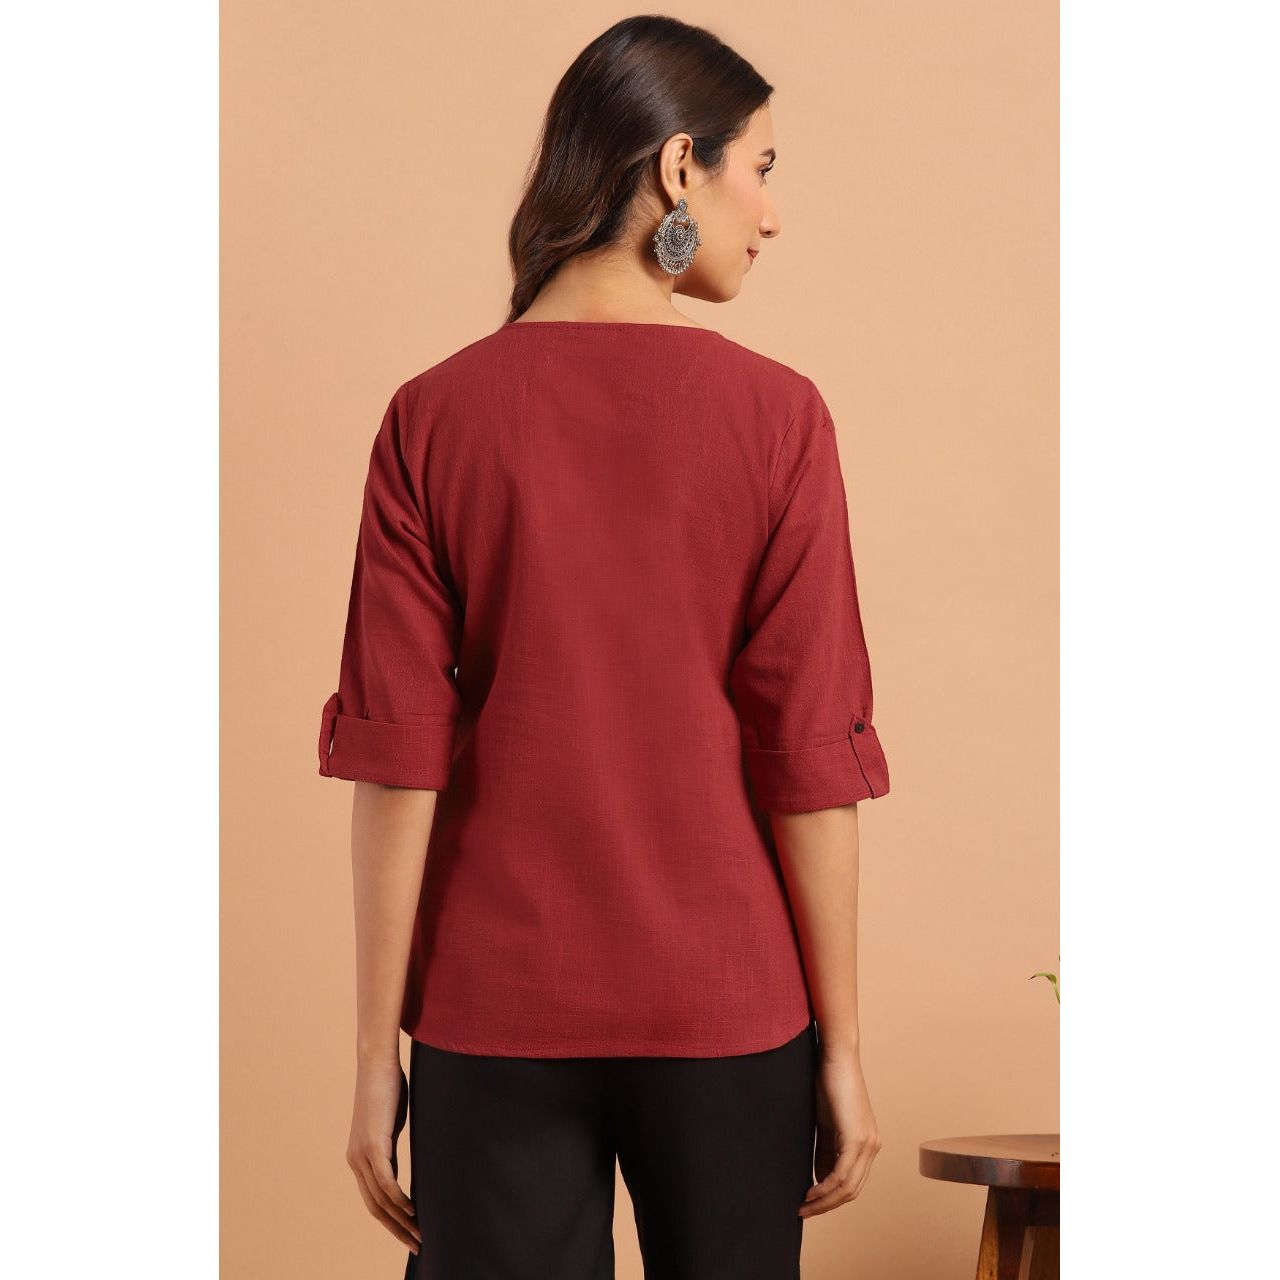 Red Indian Tunic Top/ Short Kurti for Women